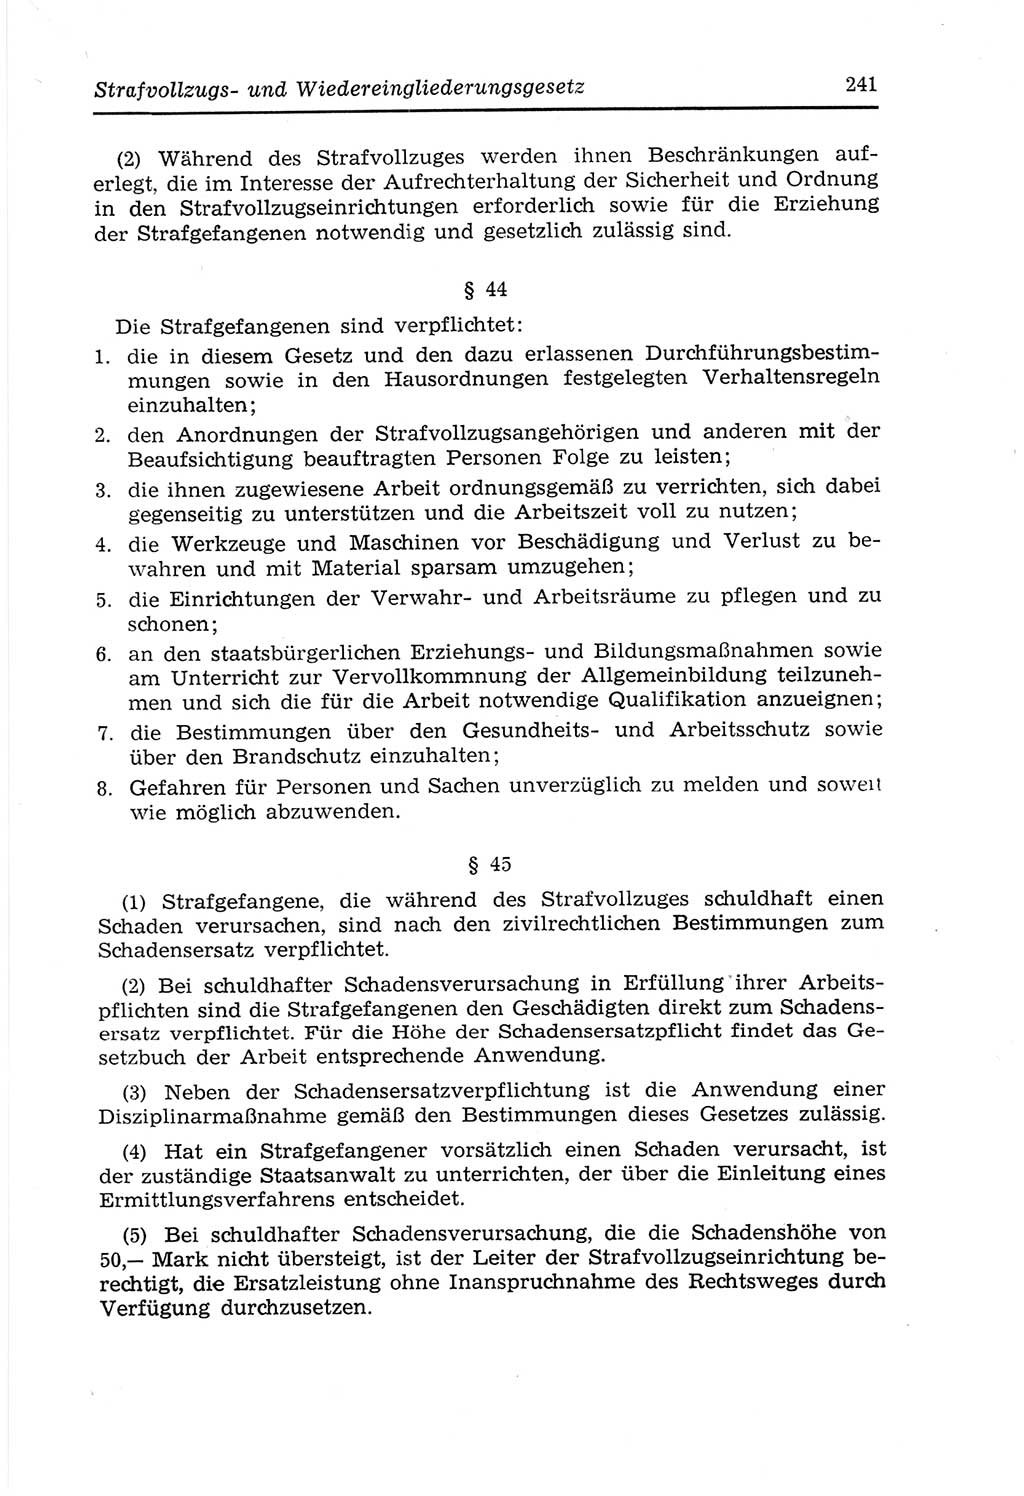 Strafvollzugs- und Wiedereingliederungsgesetz (SVWG) der Deutschen Demokratischen Republik (DDR) 1968, Seite 241 (SVWG DDR 1968, S. 241)